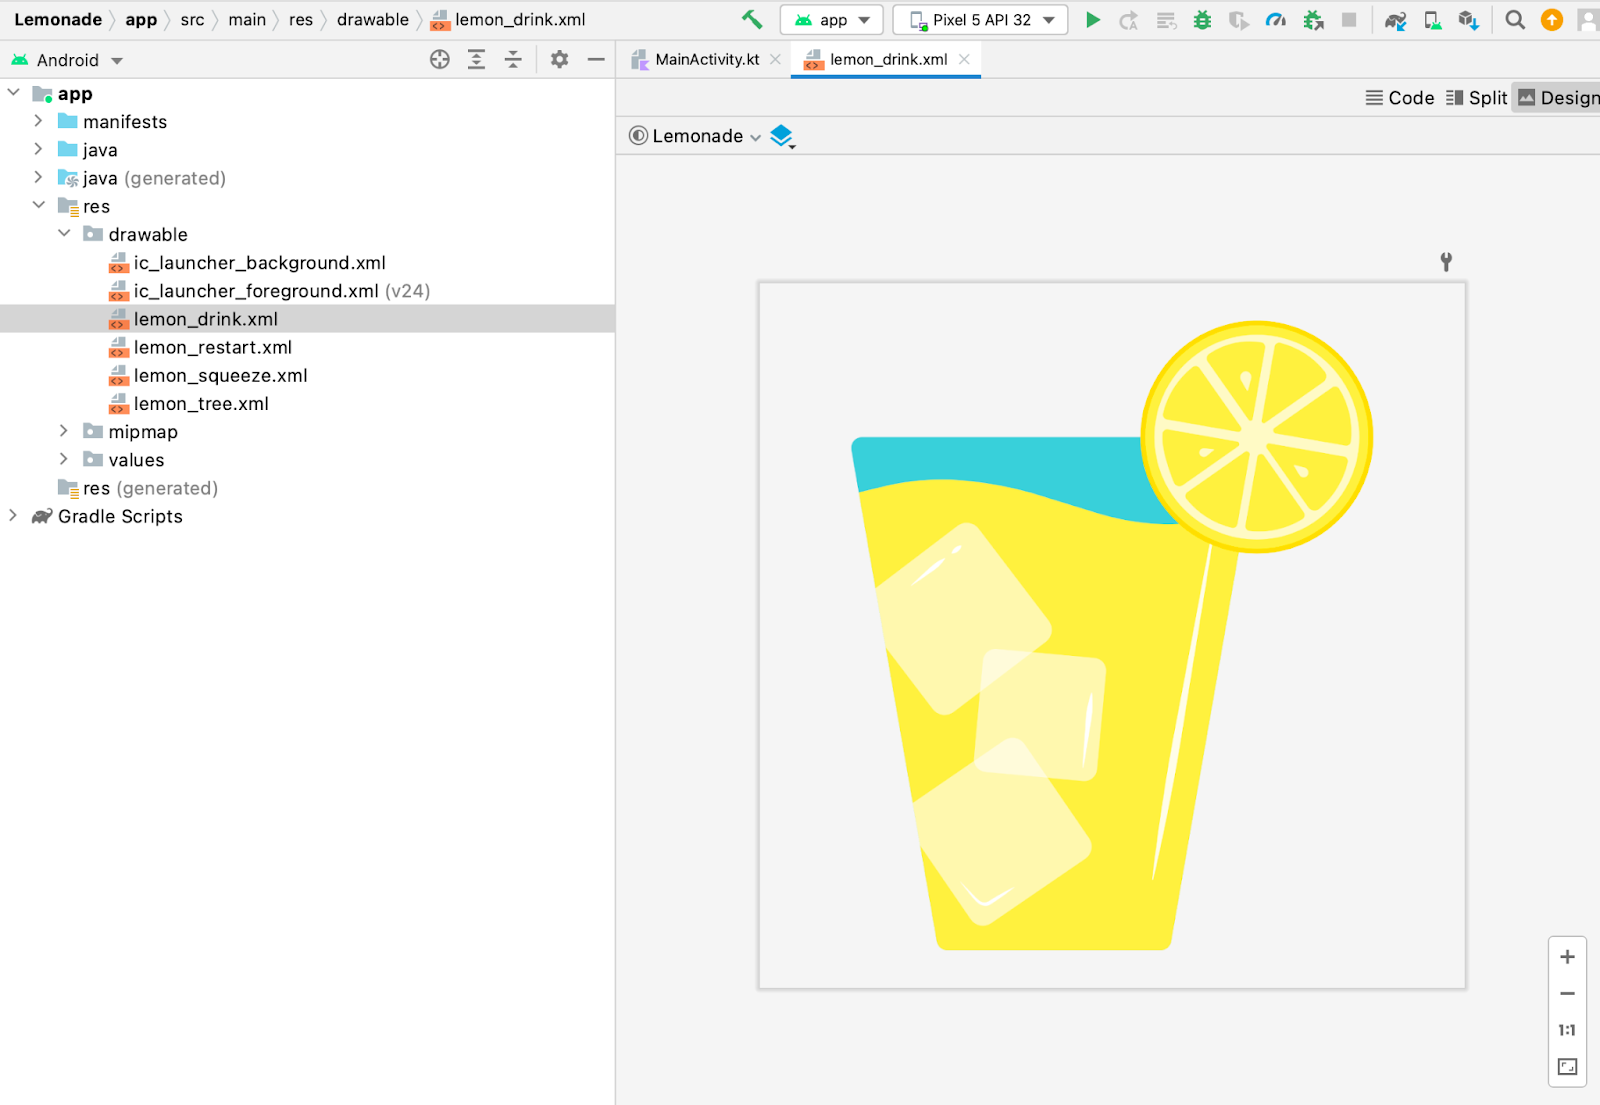 Di Android Studio, panel Project ditampilkan dengan file drawable lemon_drink.xml yang dipilih. Di panel Design, pratinjau file drawable akan terbuka, yang merupakan gambar segelas besar limun.